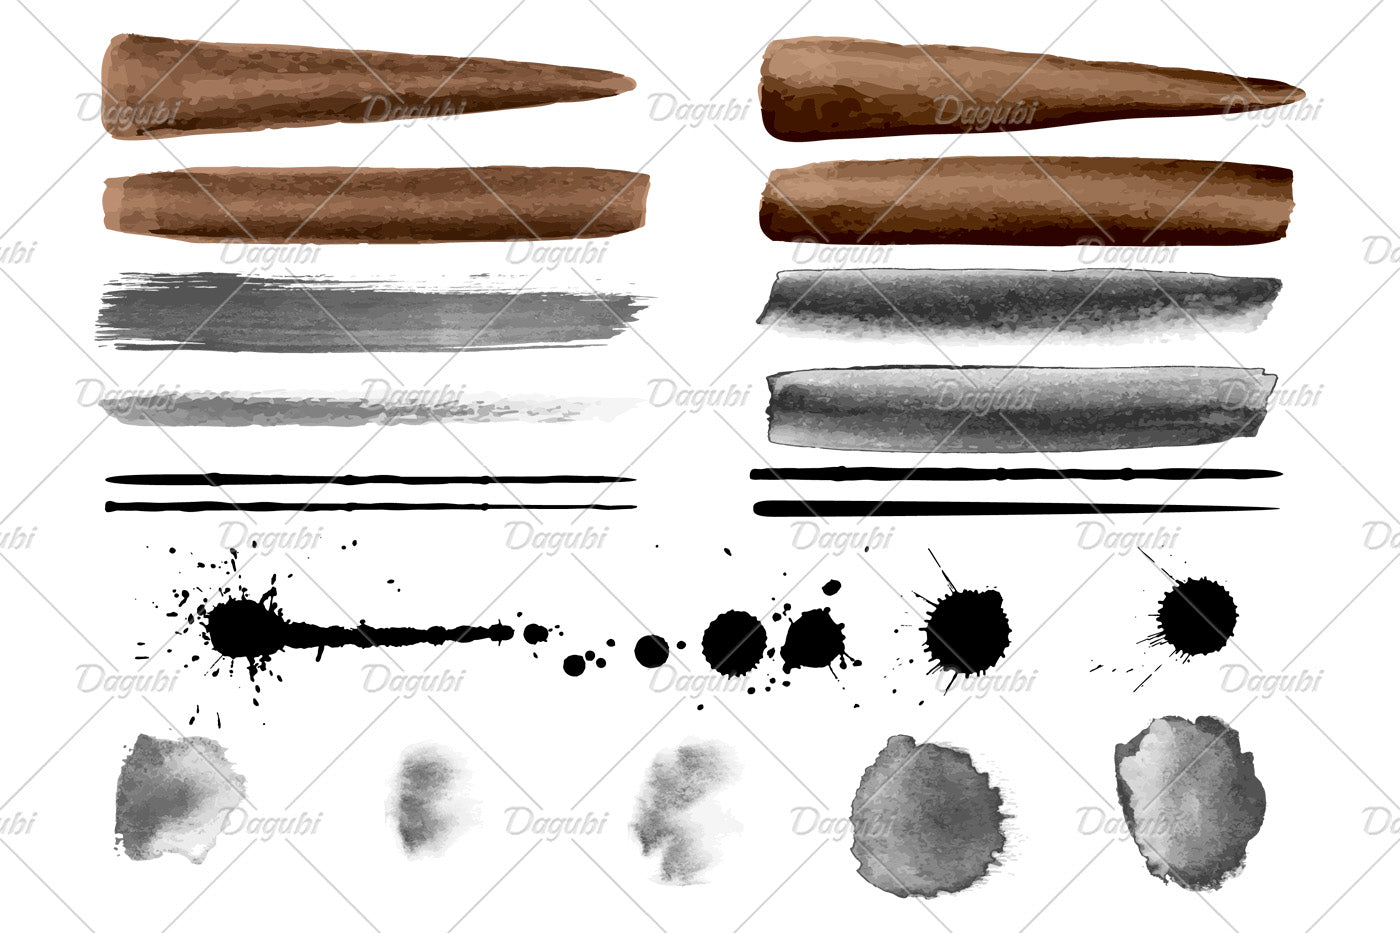 Walnut Brushes Big Set - Illustrator Brushes